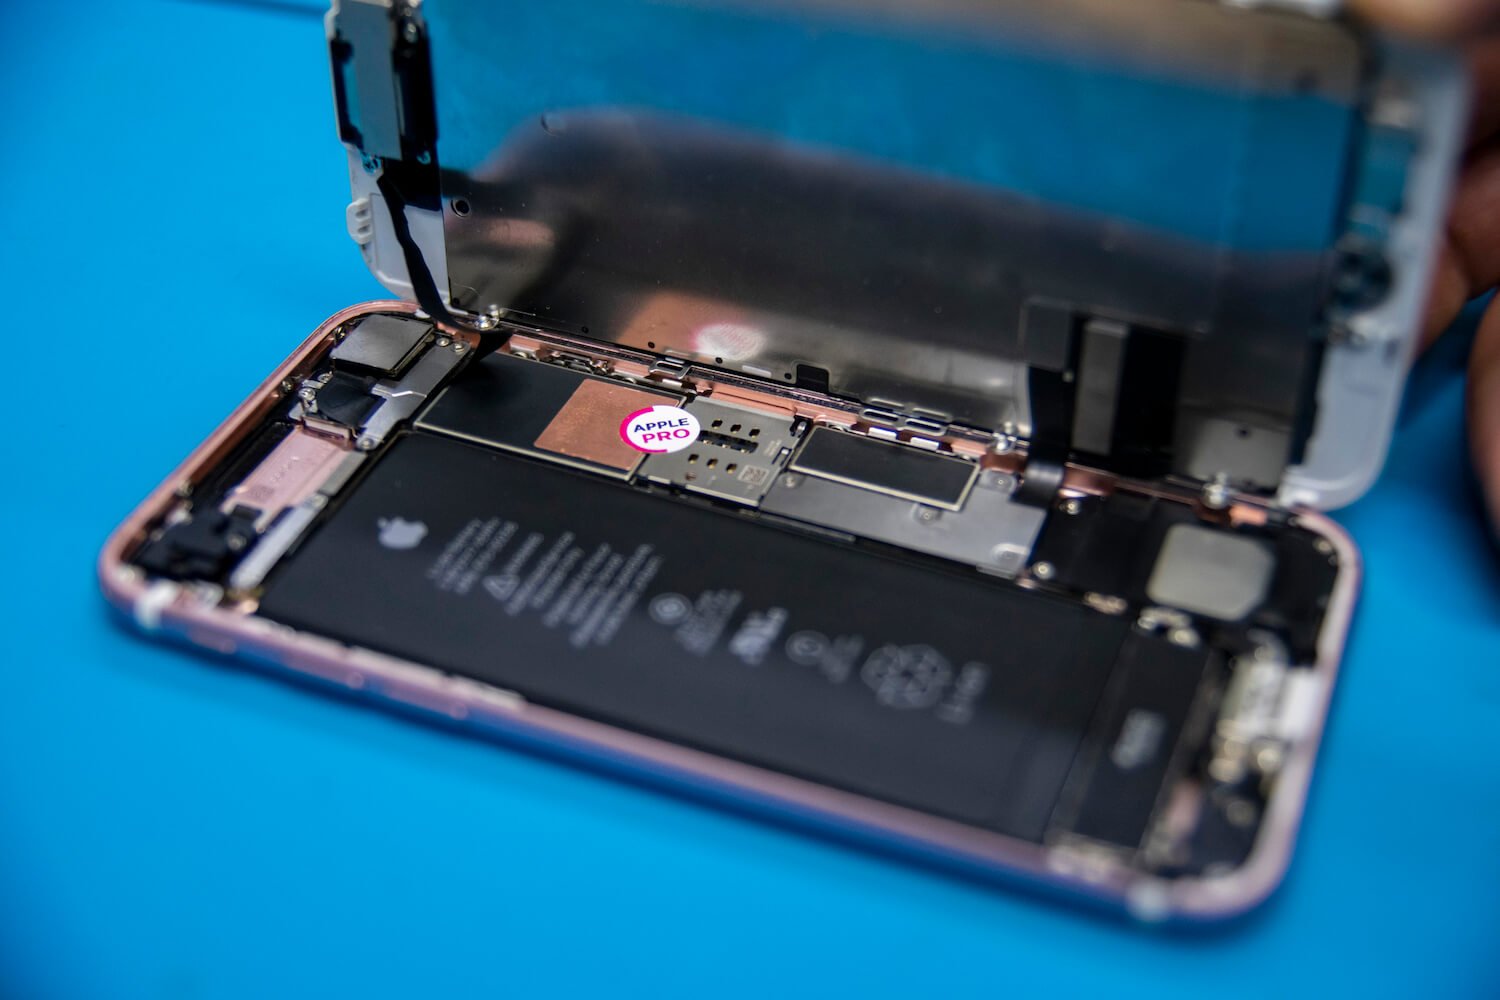 Купил новый iPhone 7 — через год ёмкость аккумулятора упала ниже 70%. Что произошло?